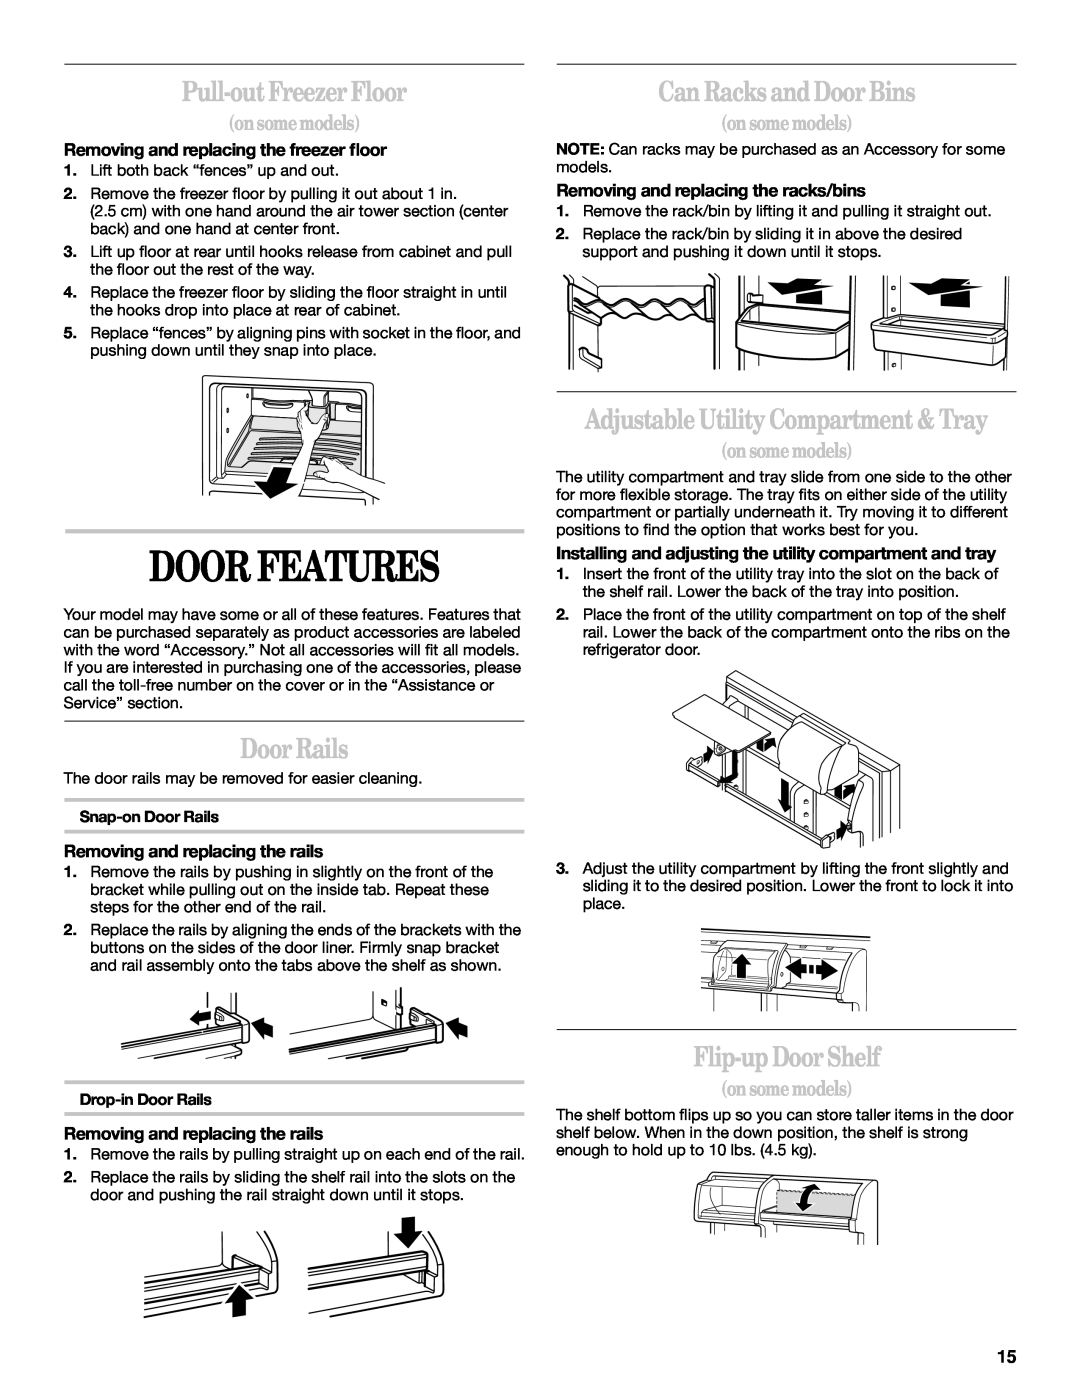 Whirlpool 2218585 manual Door Features, Pull-out Freezer Floor, Can Racks and Door Bins, Door Rails, Flip-up Door Shelf 